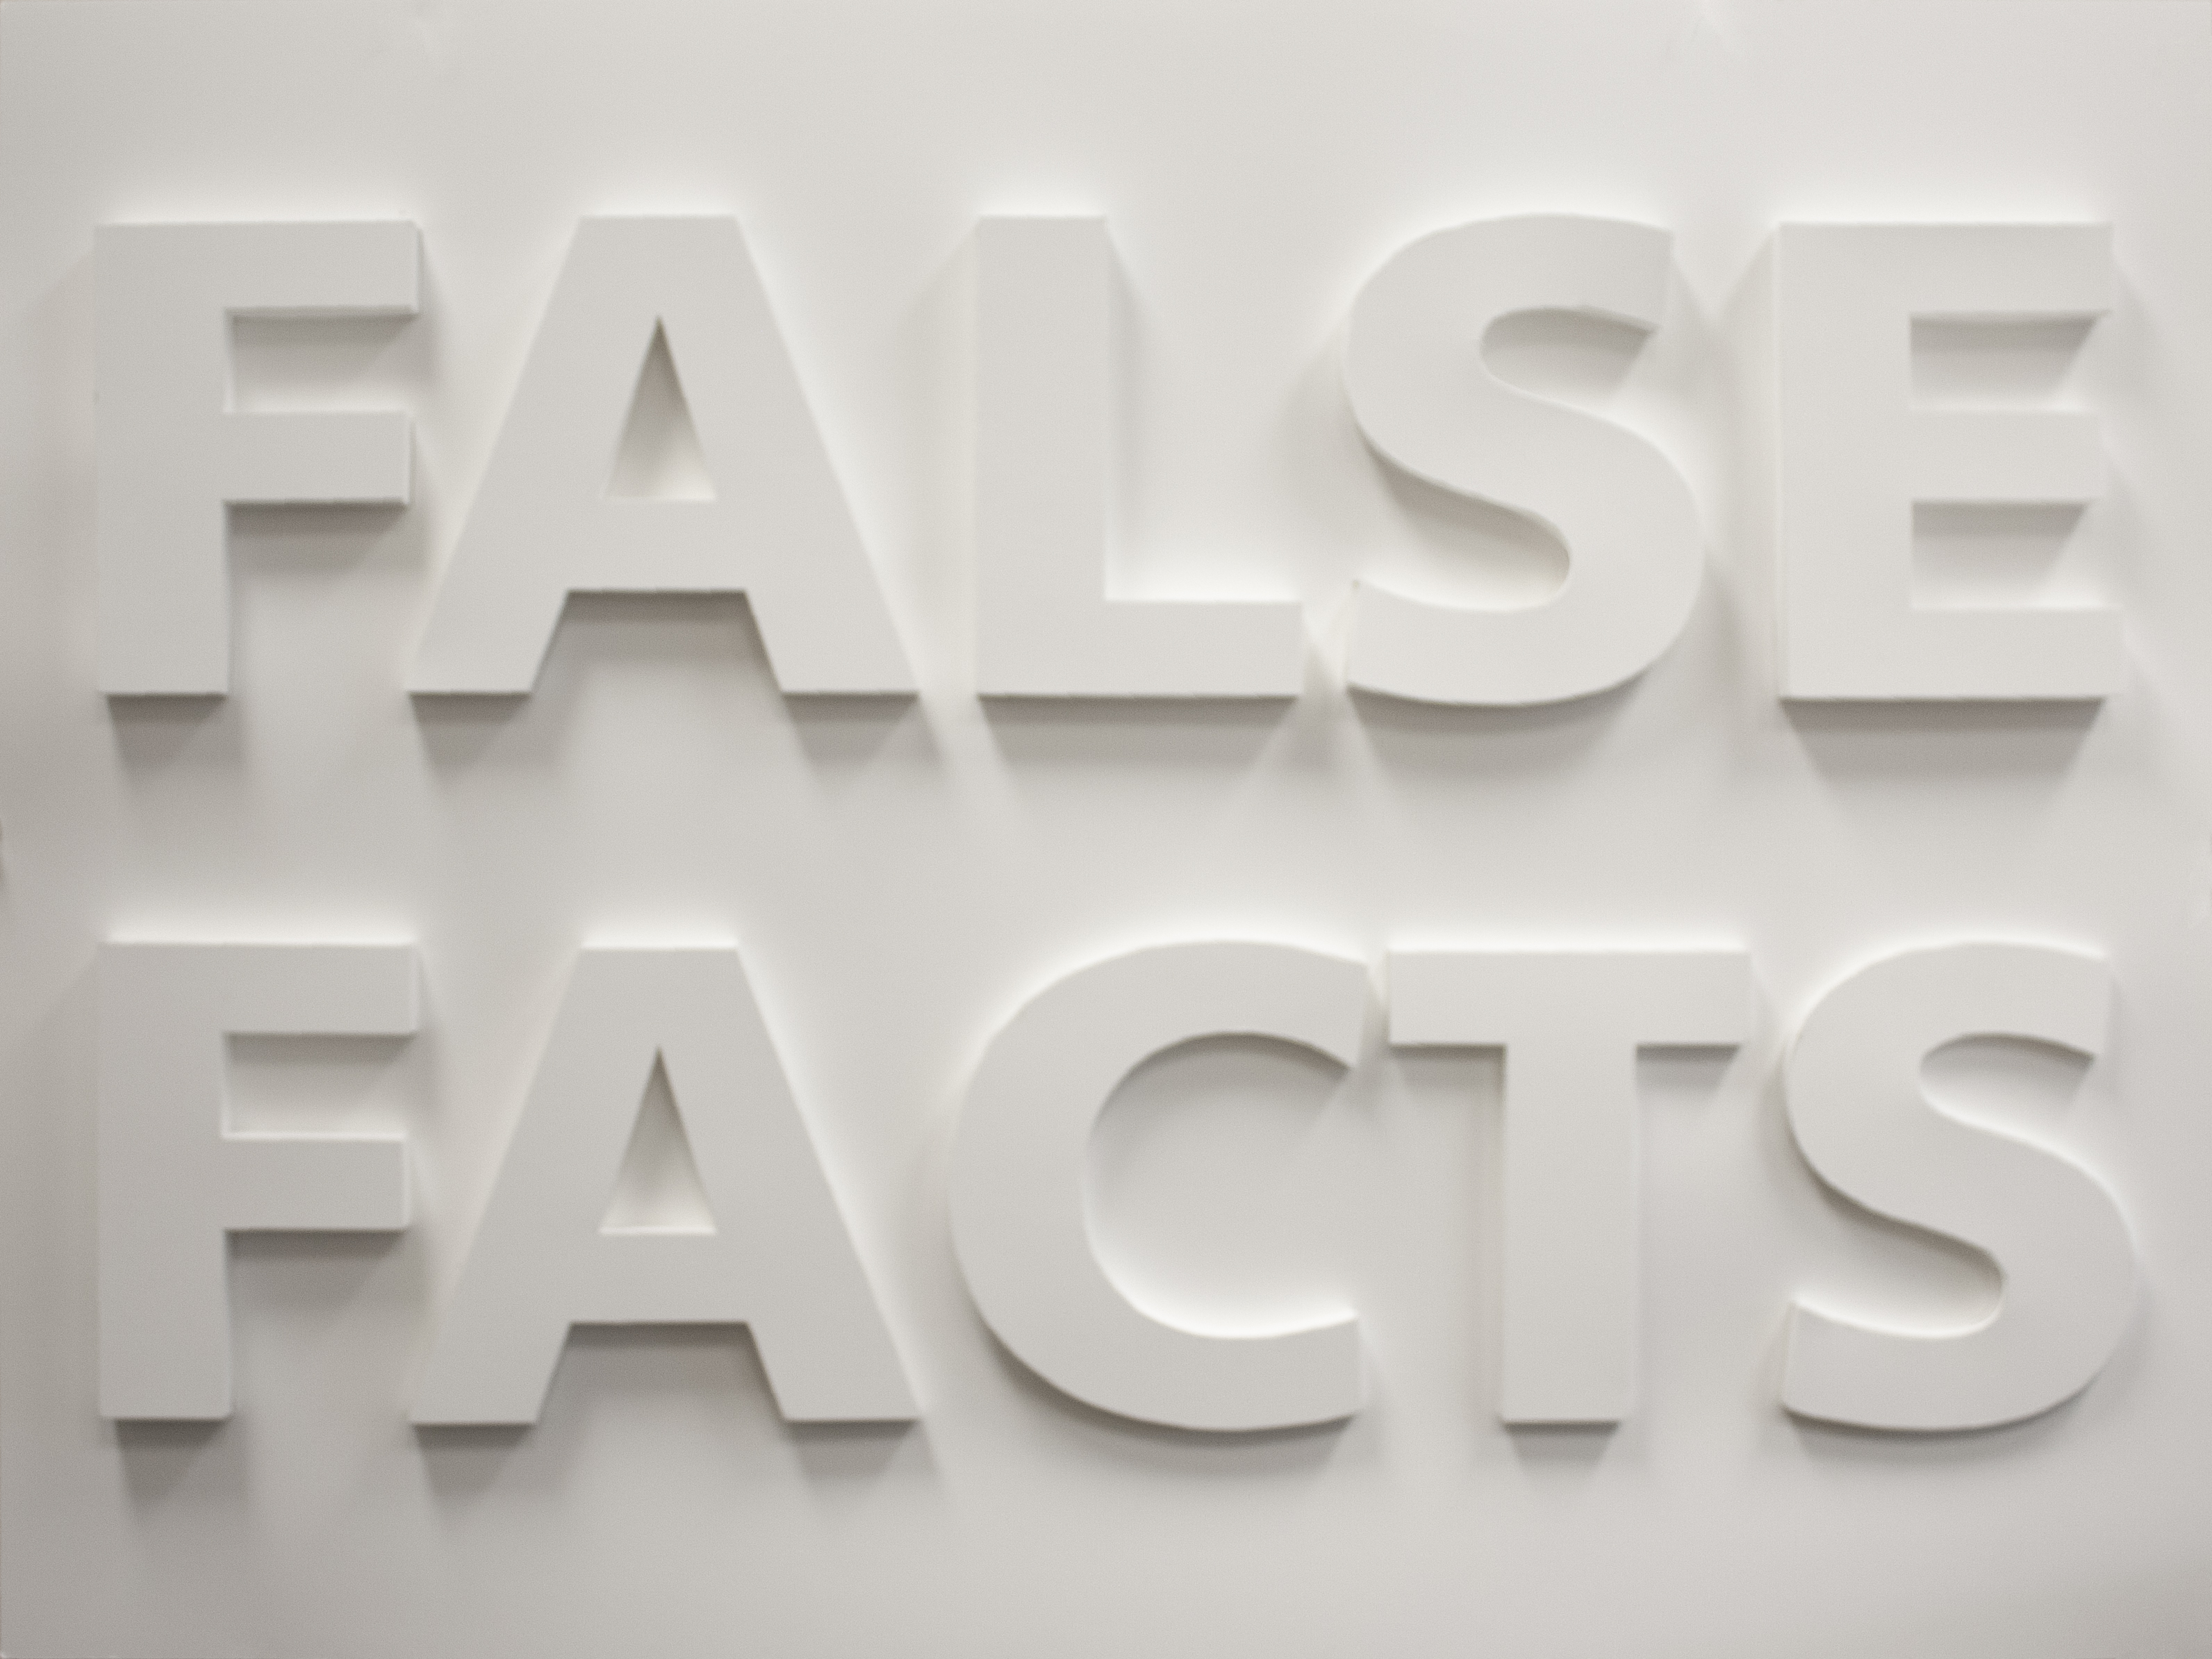 false facts